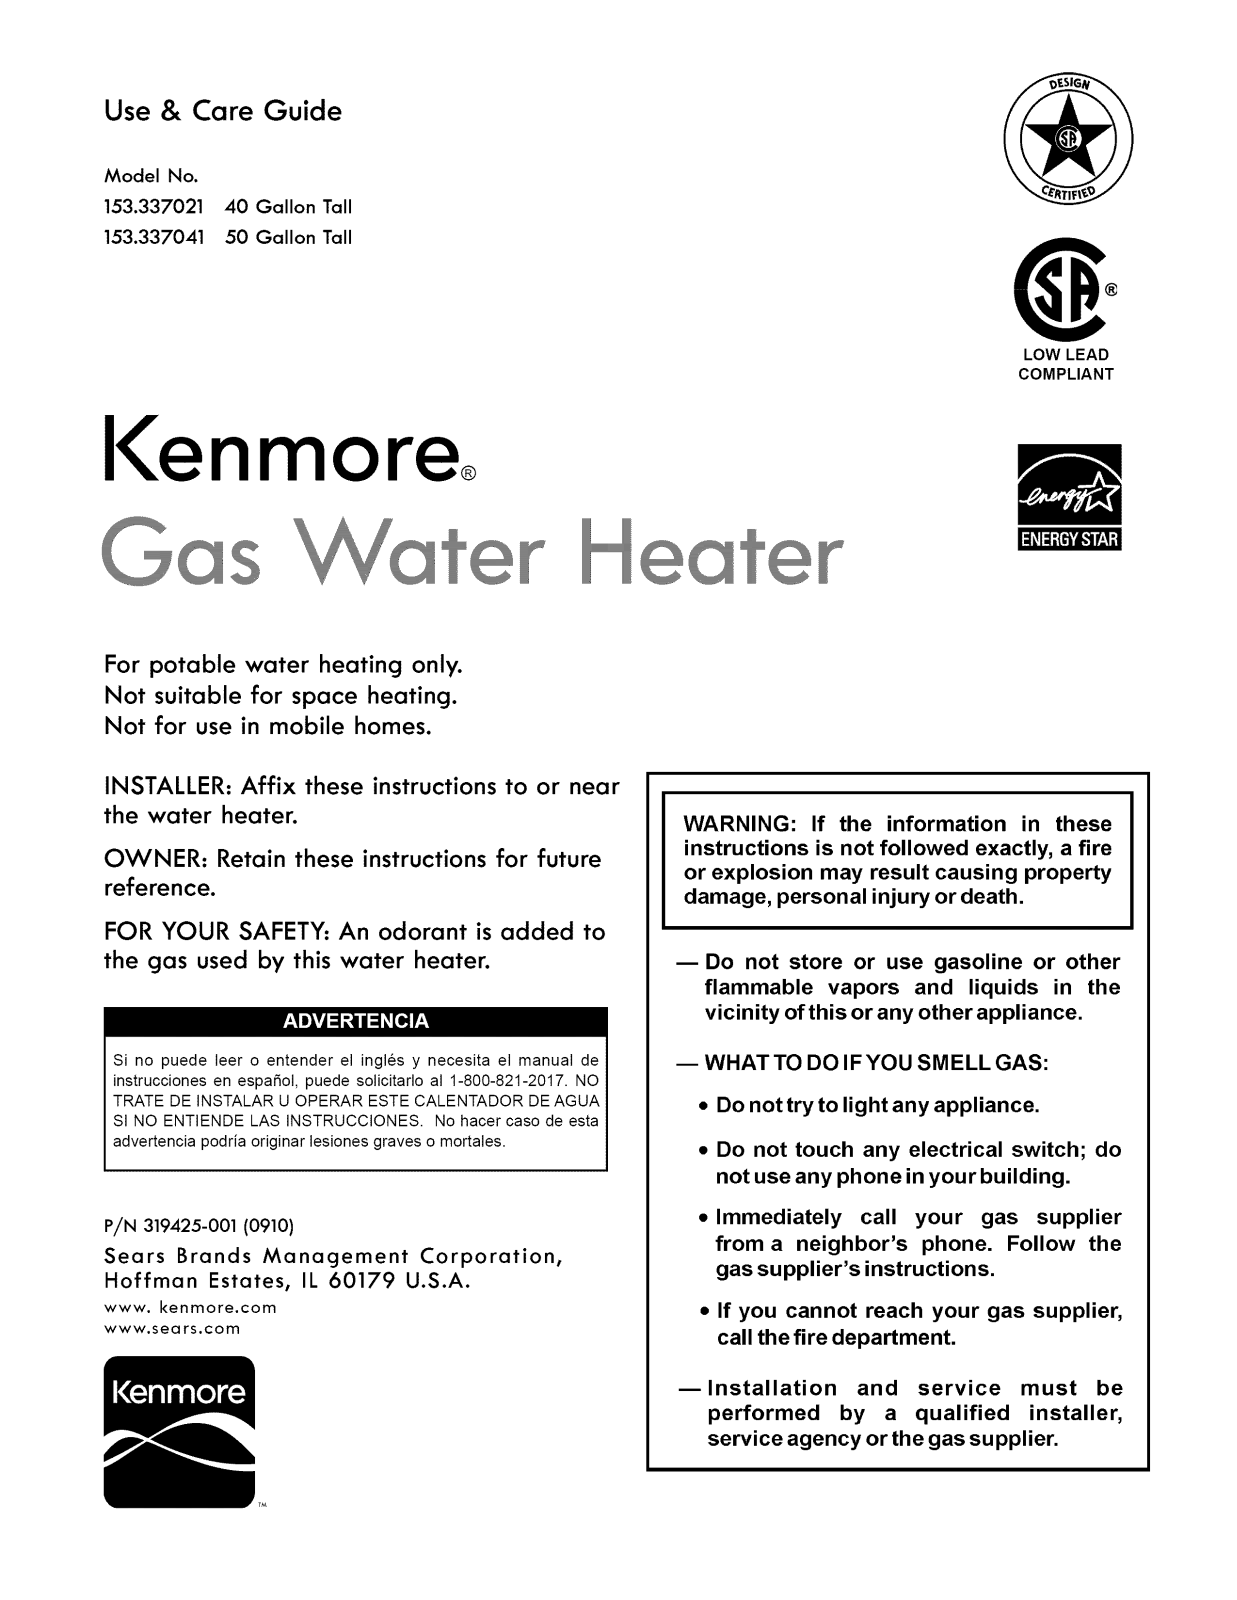 Kenmore 153337041 Owner’s Manual